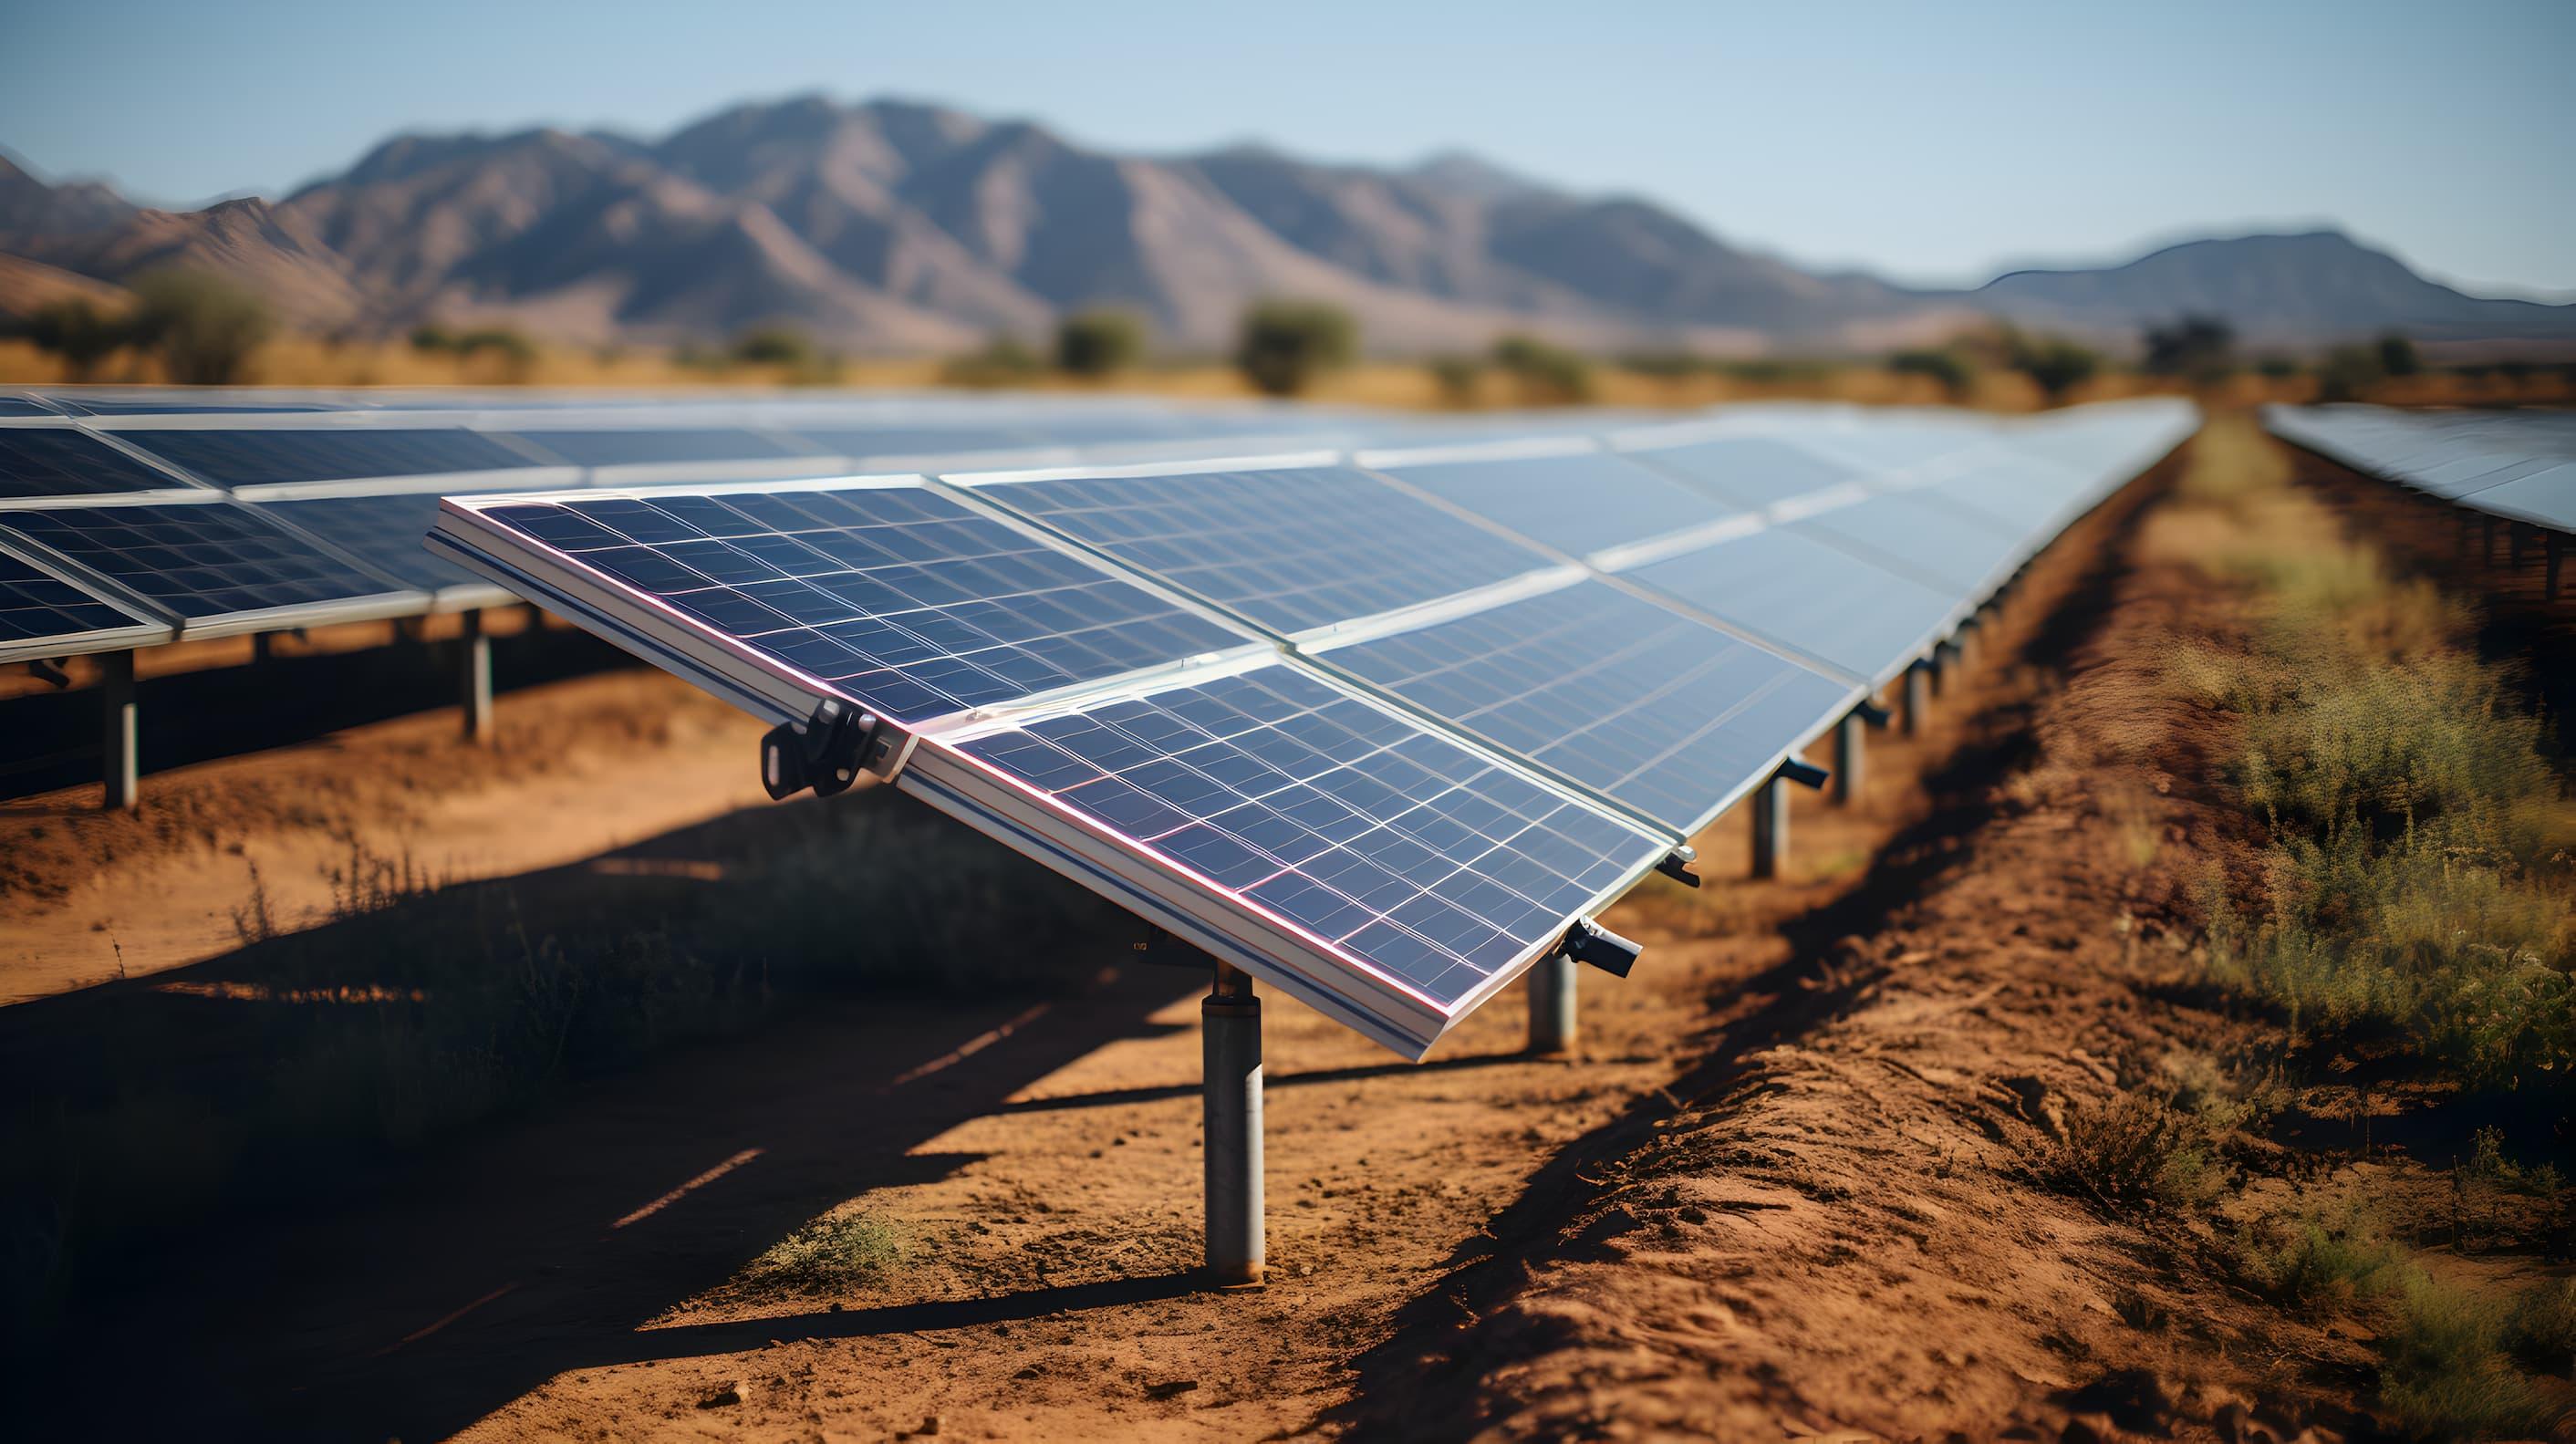 Sebrae Minas - 7 erros financeiros cometidos por integradores fotovoltaicos